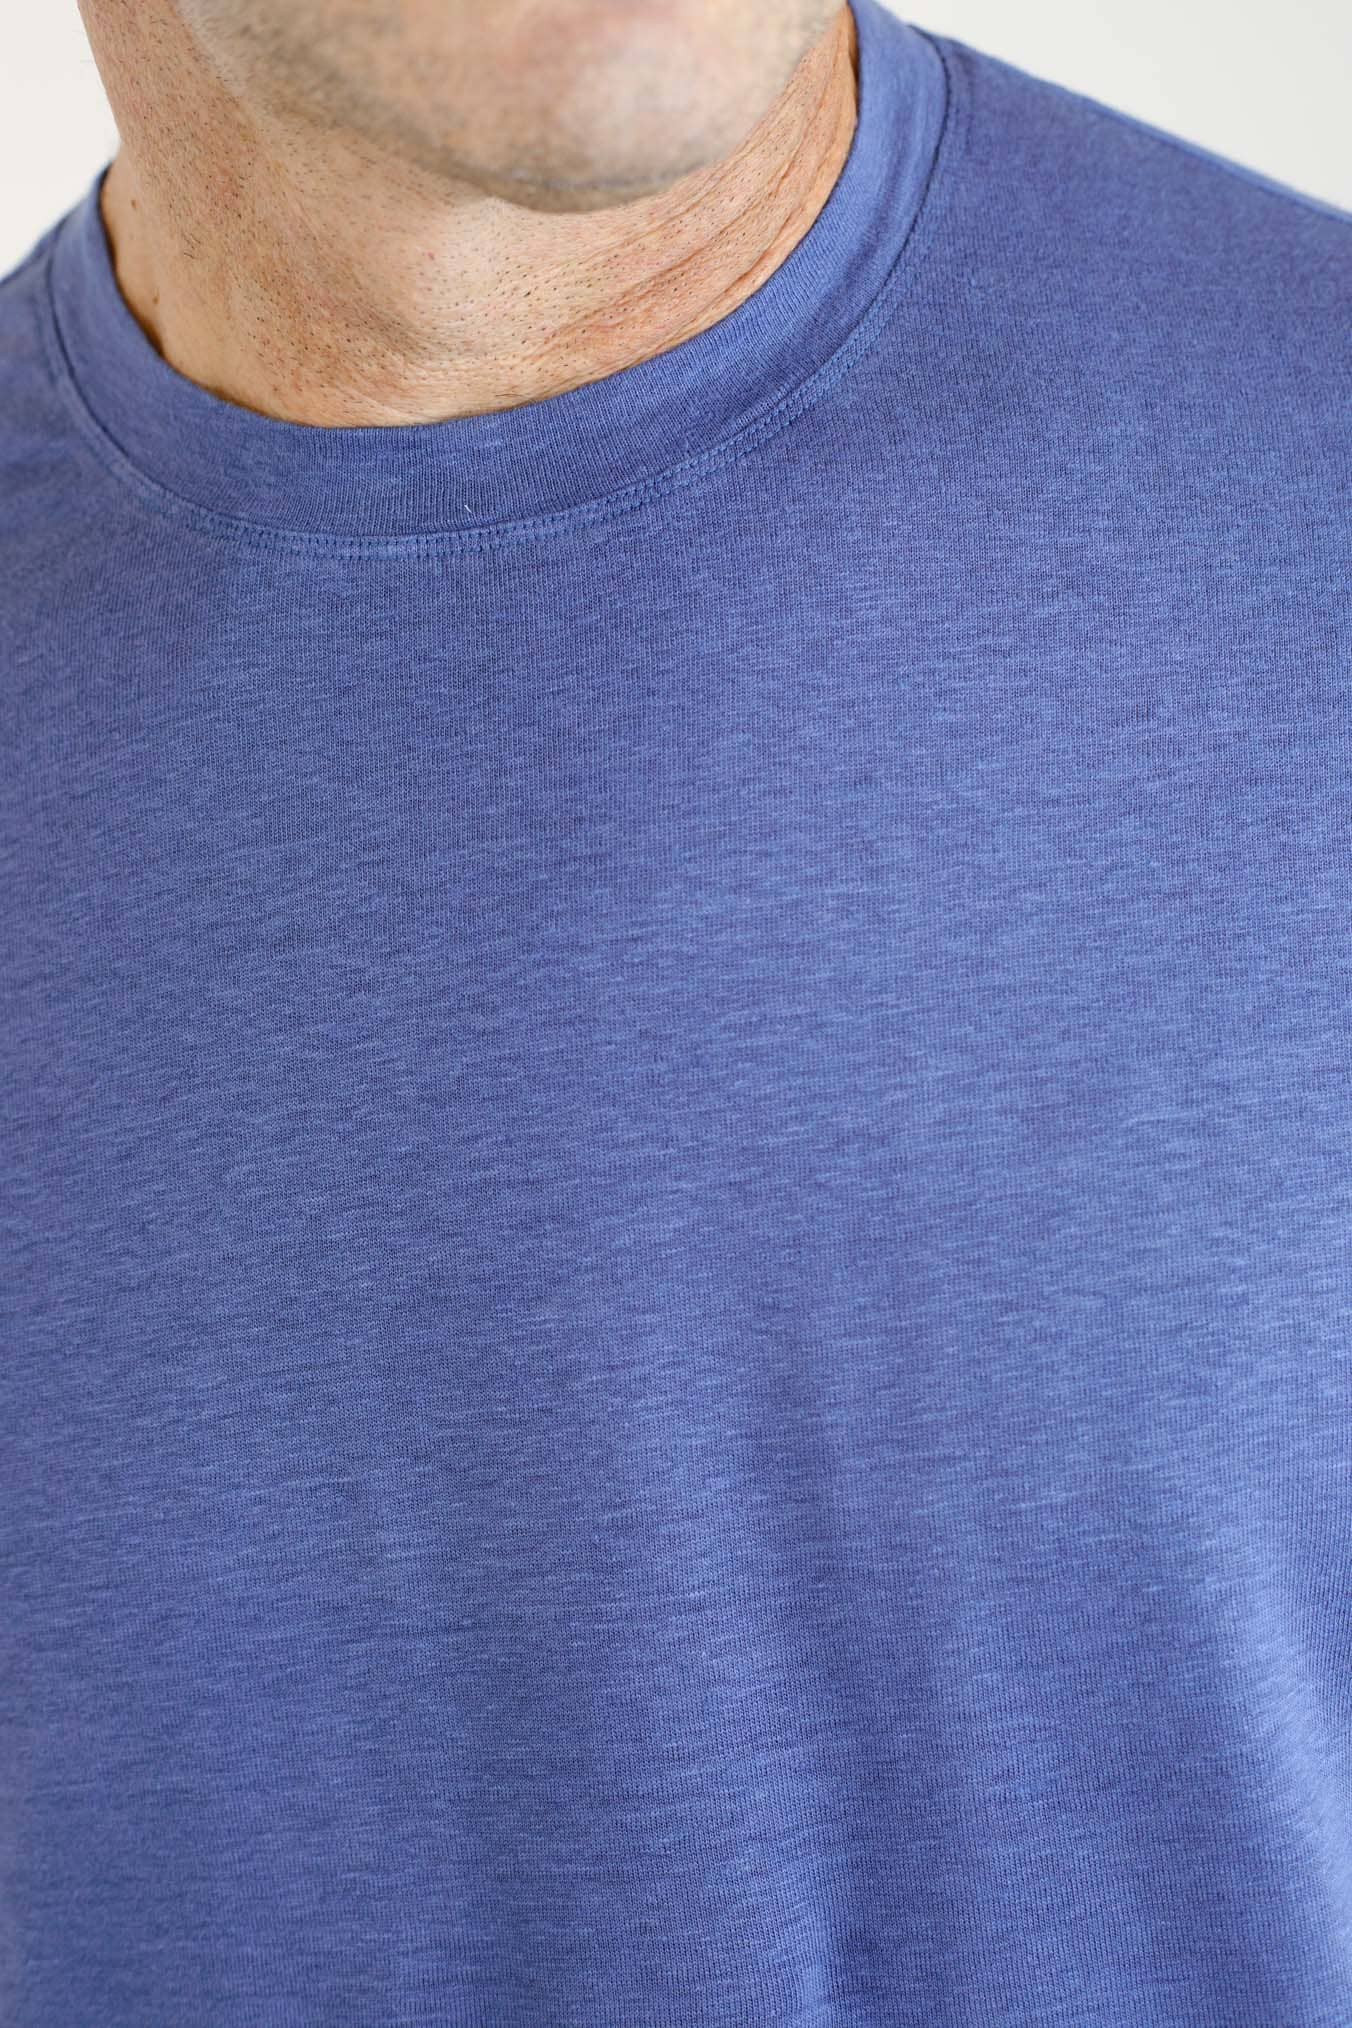 GUARINO T-Shirt Maniche Corte Jersey Lino Blu Royal